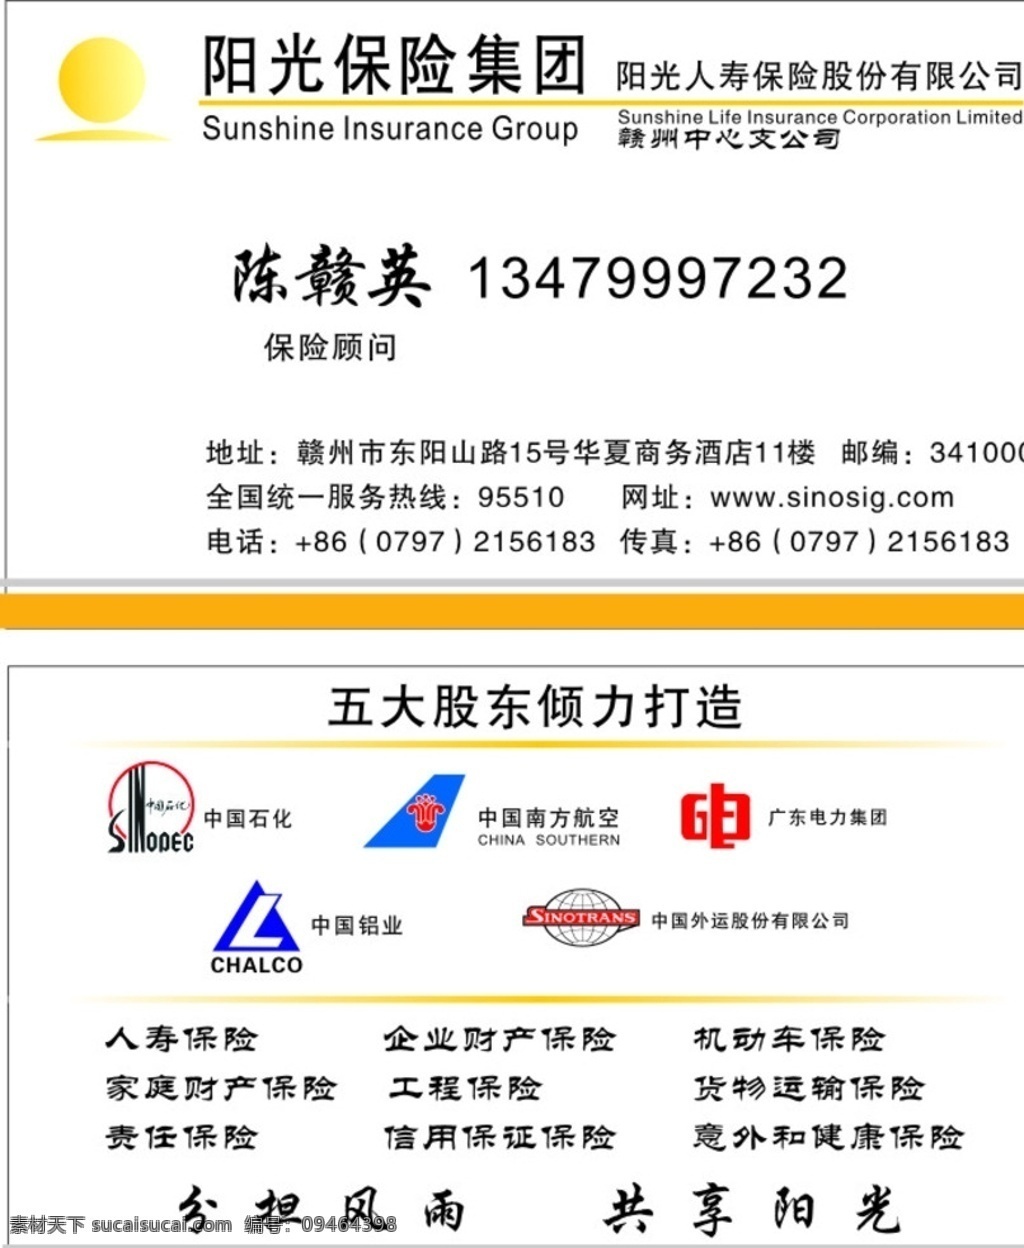 阳光保险名片 阳光保险 名片 中国石化标志 保险 南方航空 广东电力 中国铝业 中国外运 标志 名片卡片